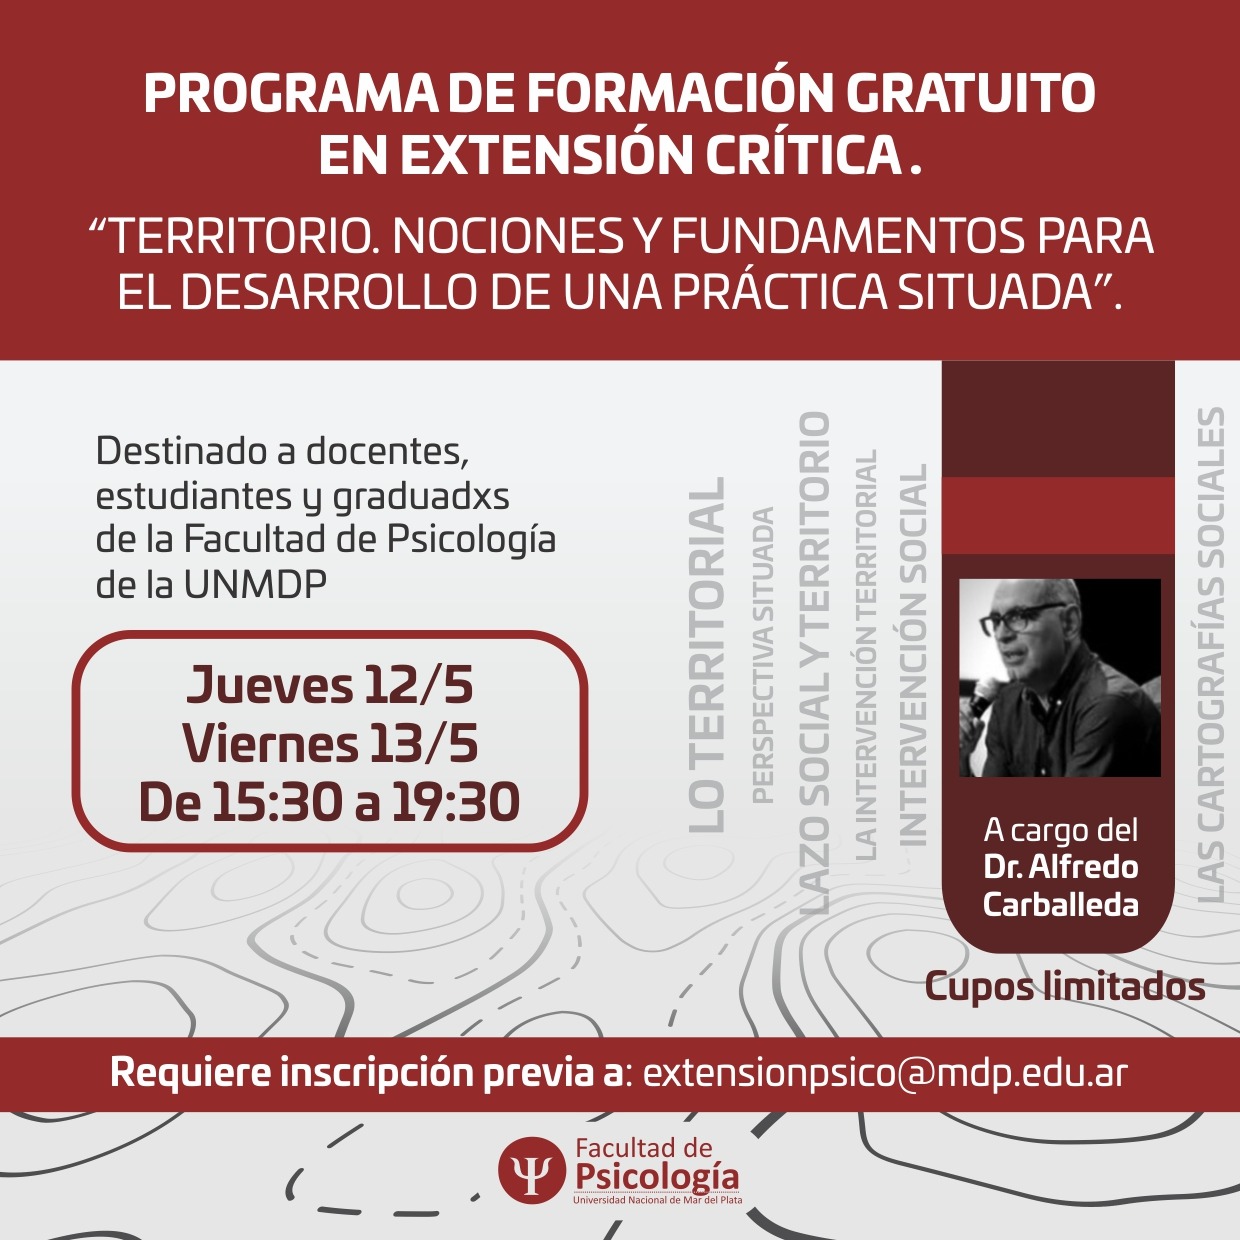 Flyer - “PROGRAMA DE FORMACIÓN GRATUITA EN EXTENSIÓN CRÍTICA